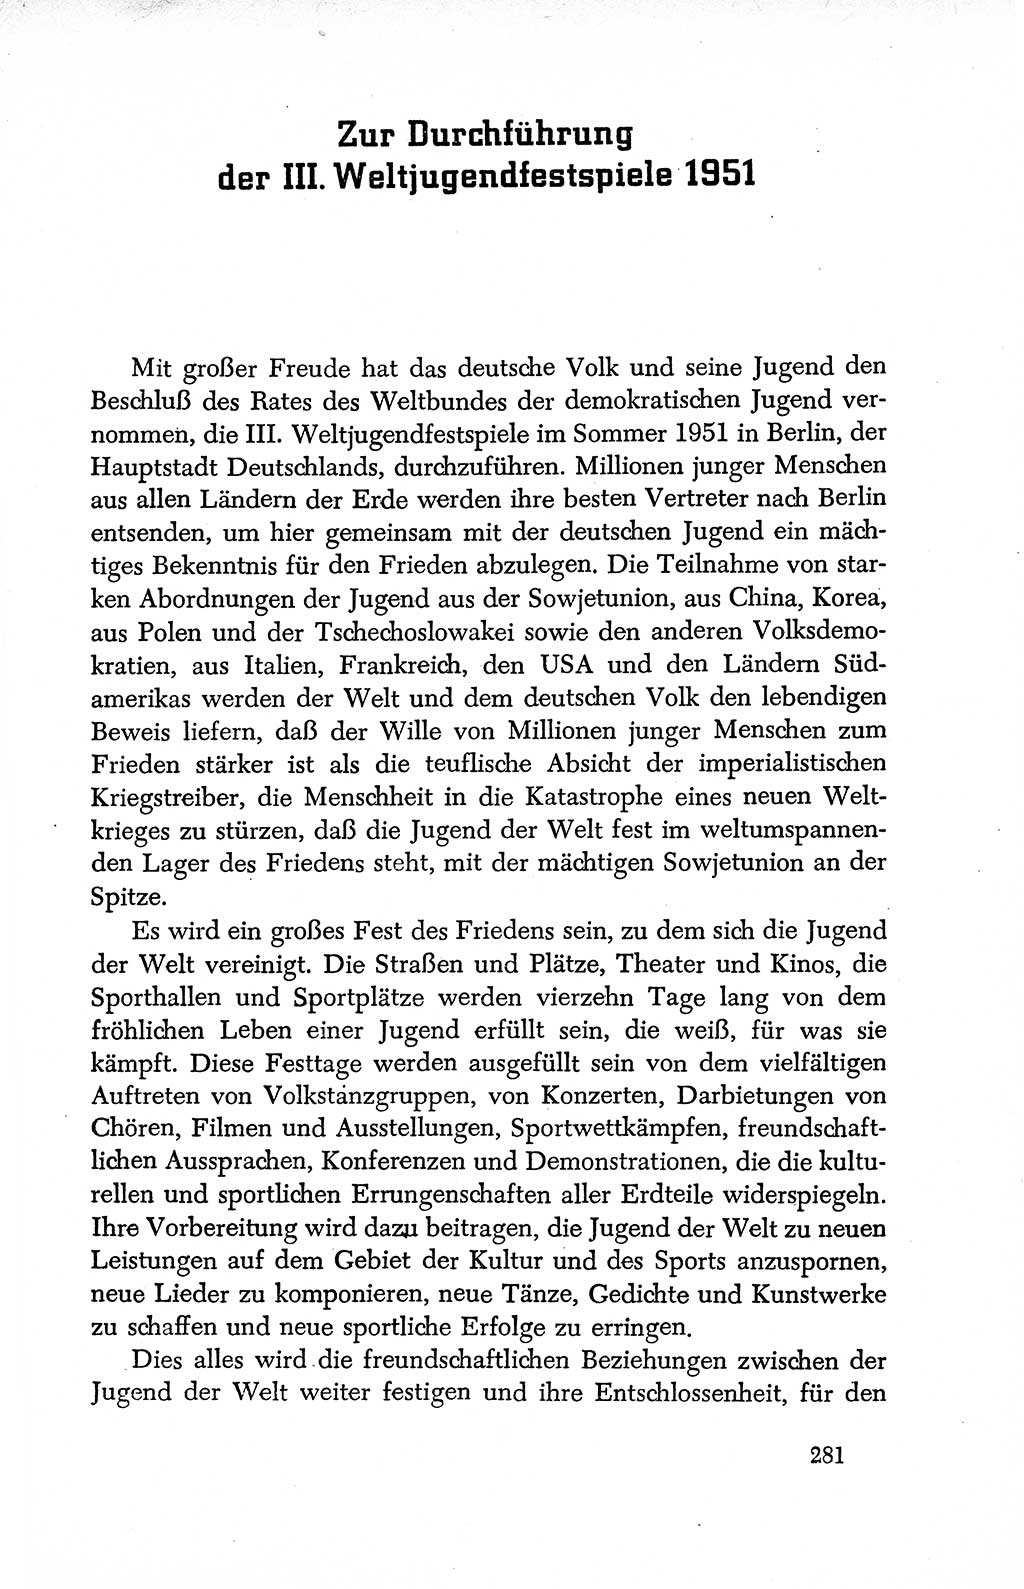 Dokumente der Sozialistischen Einheitspartei Deutschlands (SED) [Deutsche Demokratische Republik (DDR)] 1950-1952, Seite 281 (Dok. SED DDR 1950-1952, S. 281)